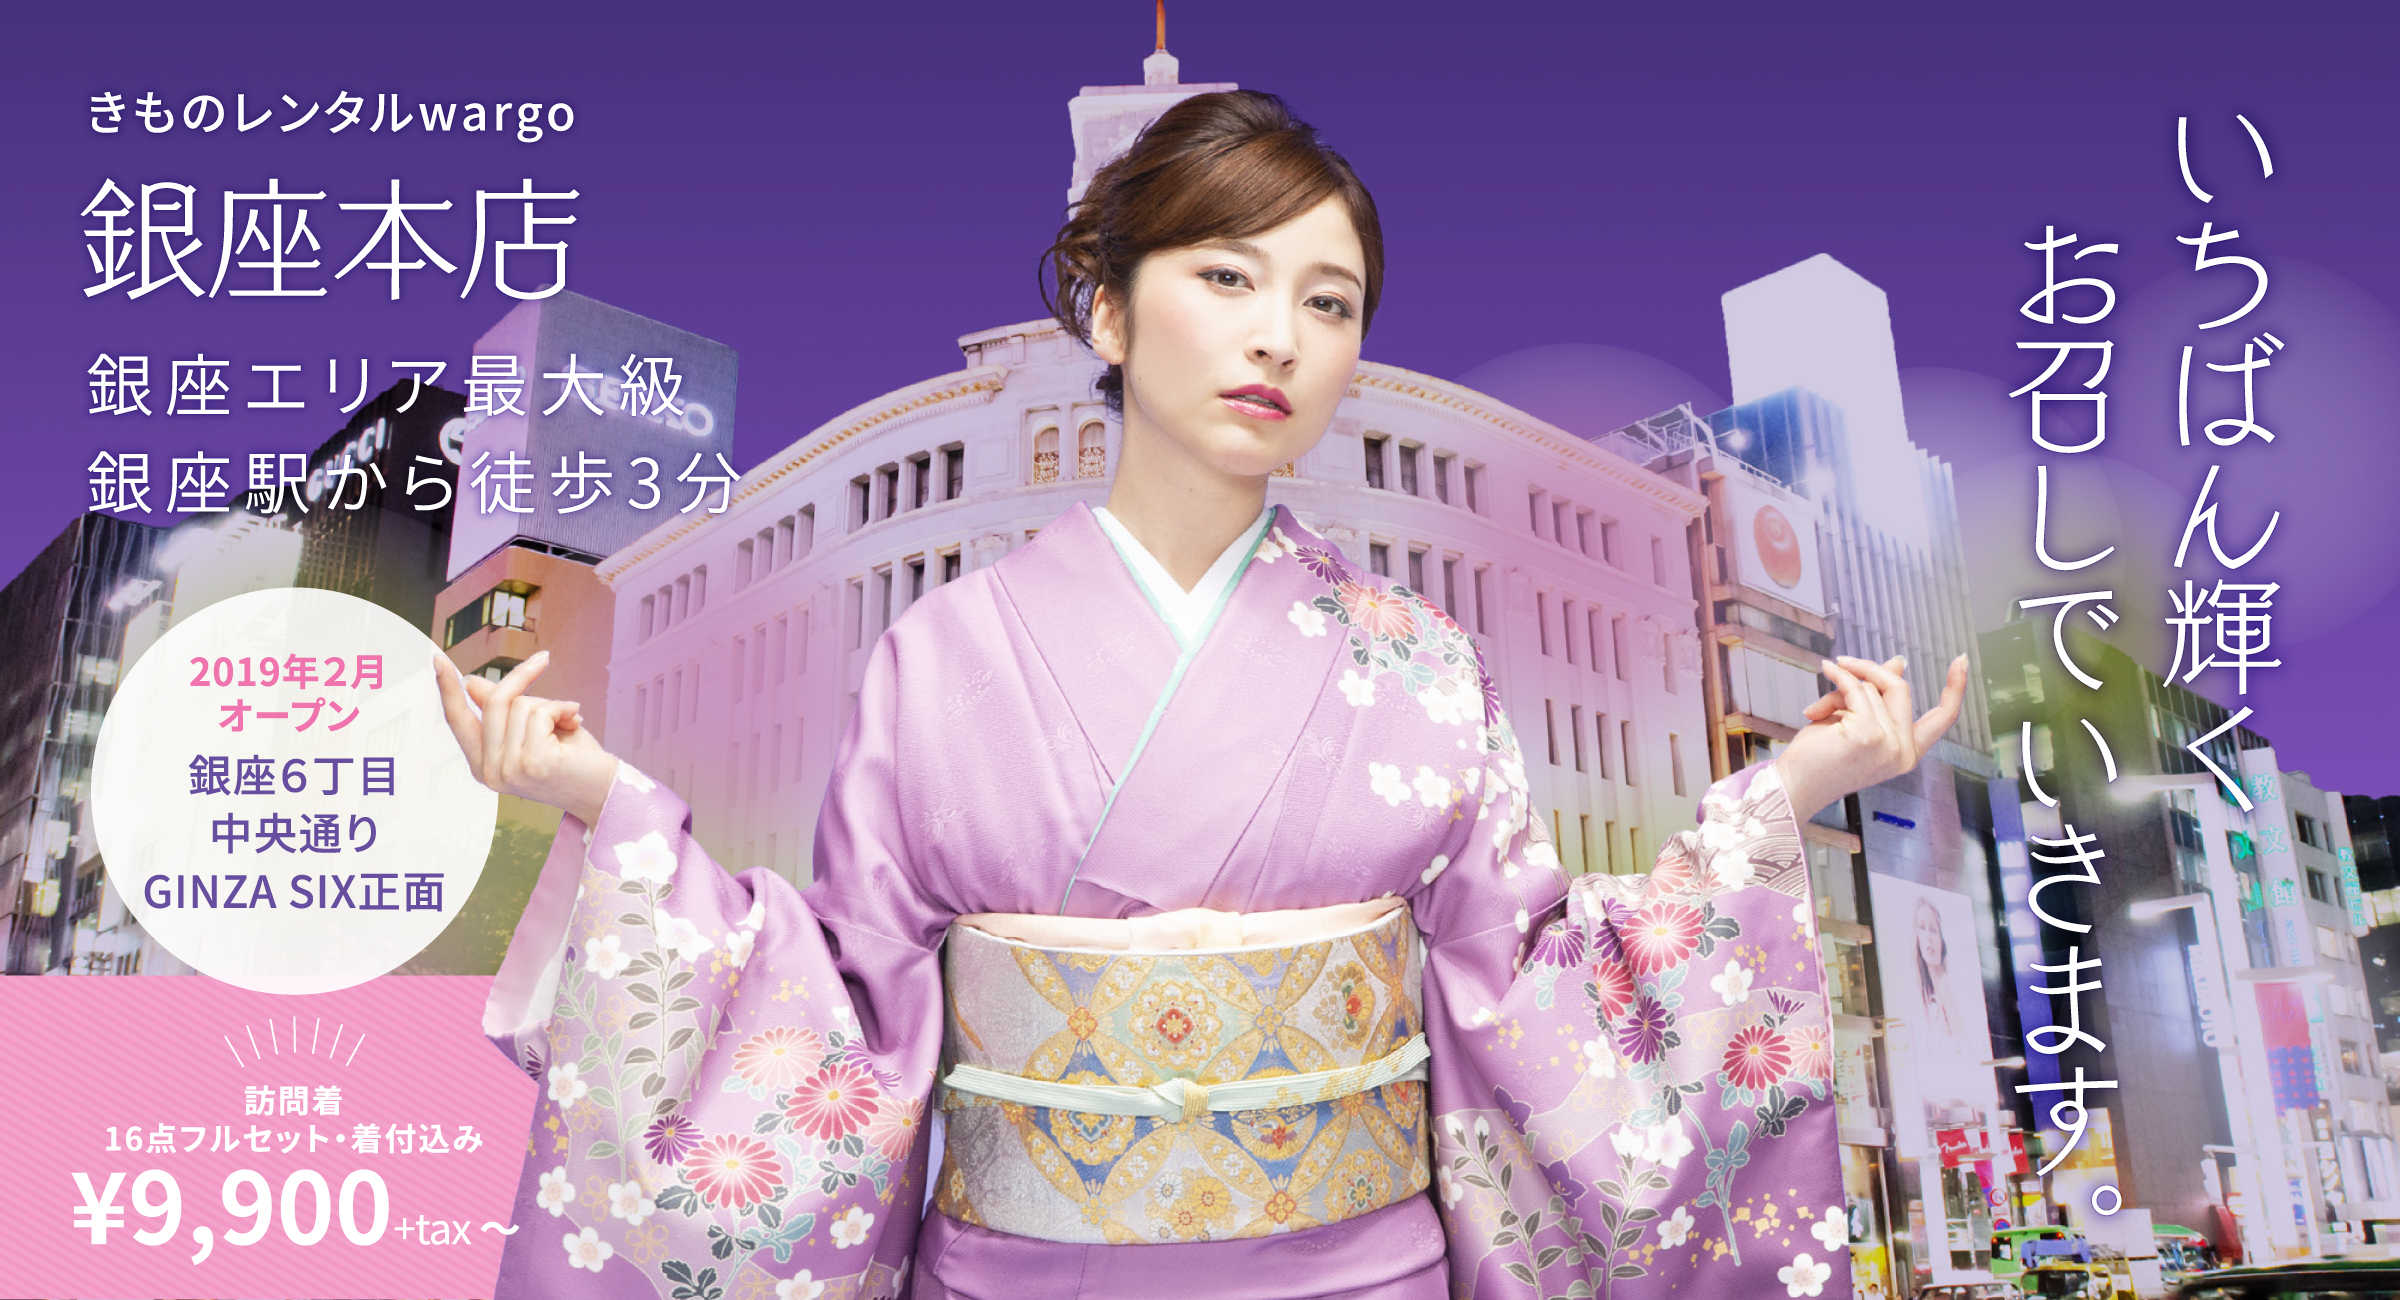 Kimono Rental Wargo, pilihan terbaik untuk sewa kimono dan yukata di Ginza